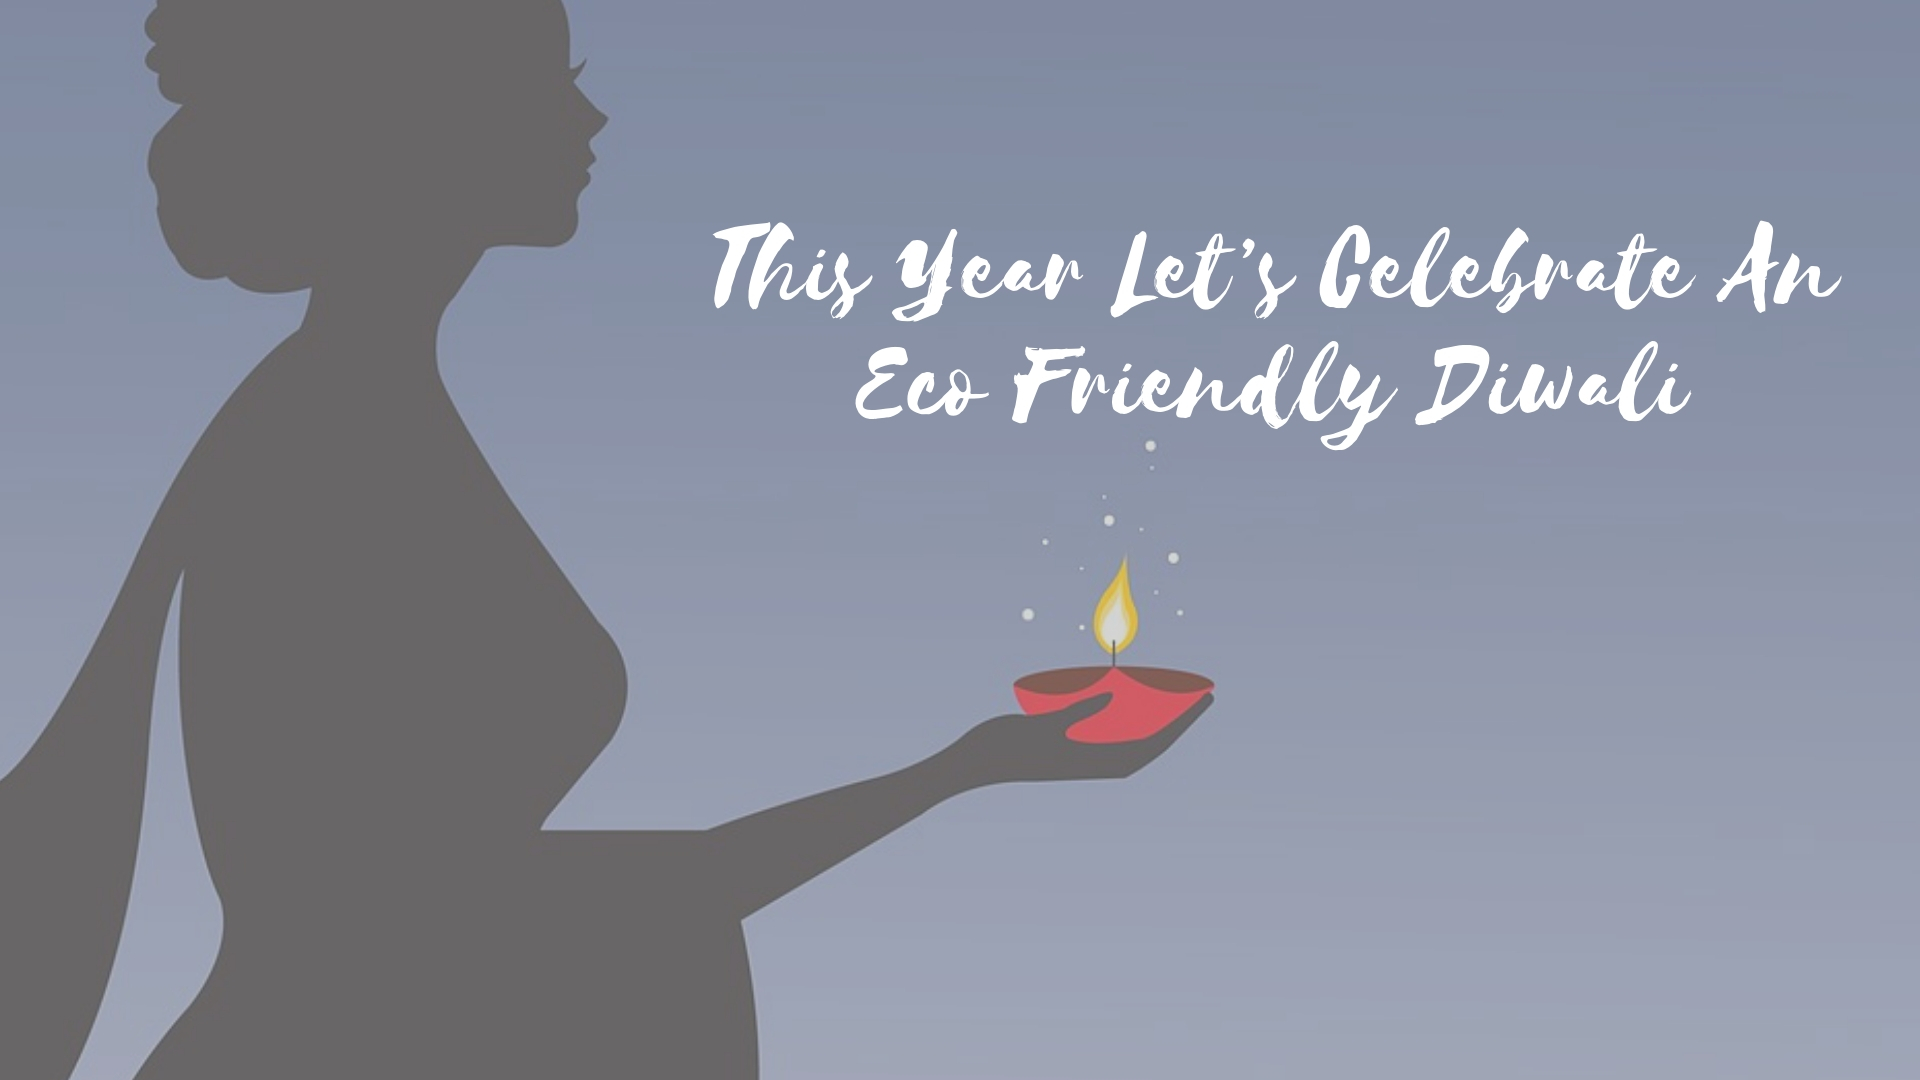 eco Diwali, eco friendly Diwali, pollution free Diwali, green diwali